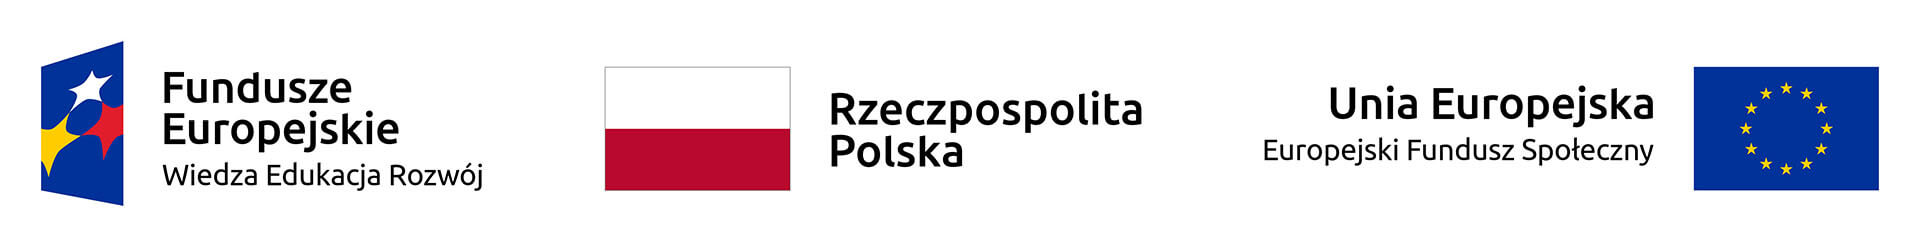 Baner z logotypami: Fundusze Europejskie Wiedza Edukacja Rozwój, Flaga Polski, Flaga Uni Europejskiej